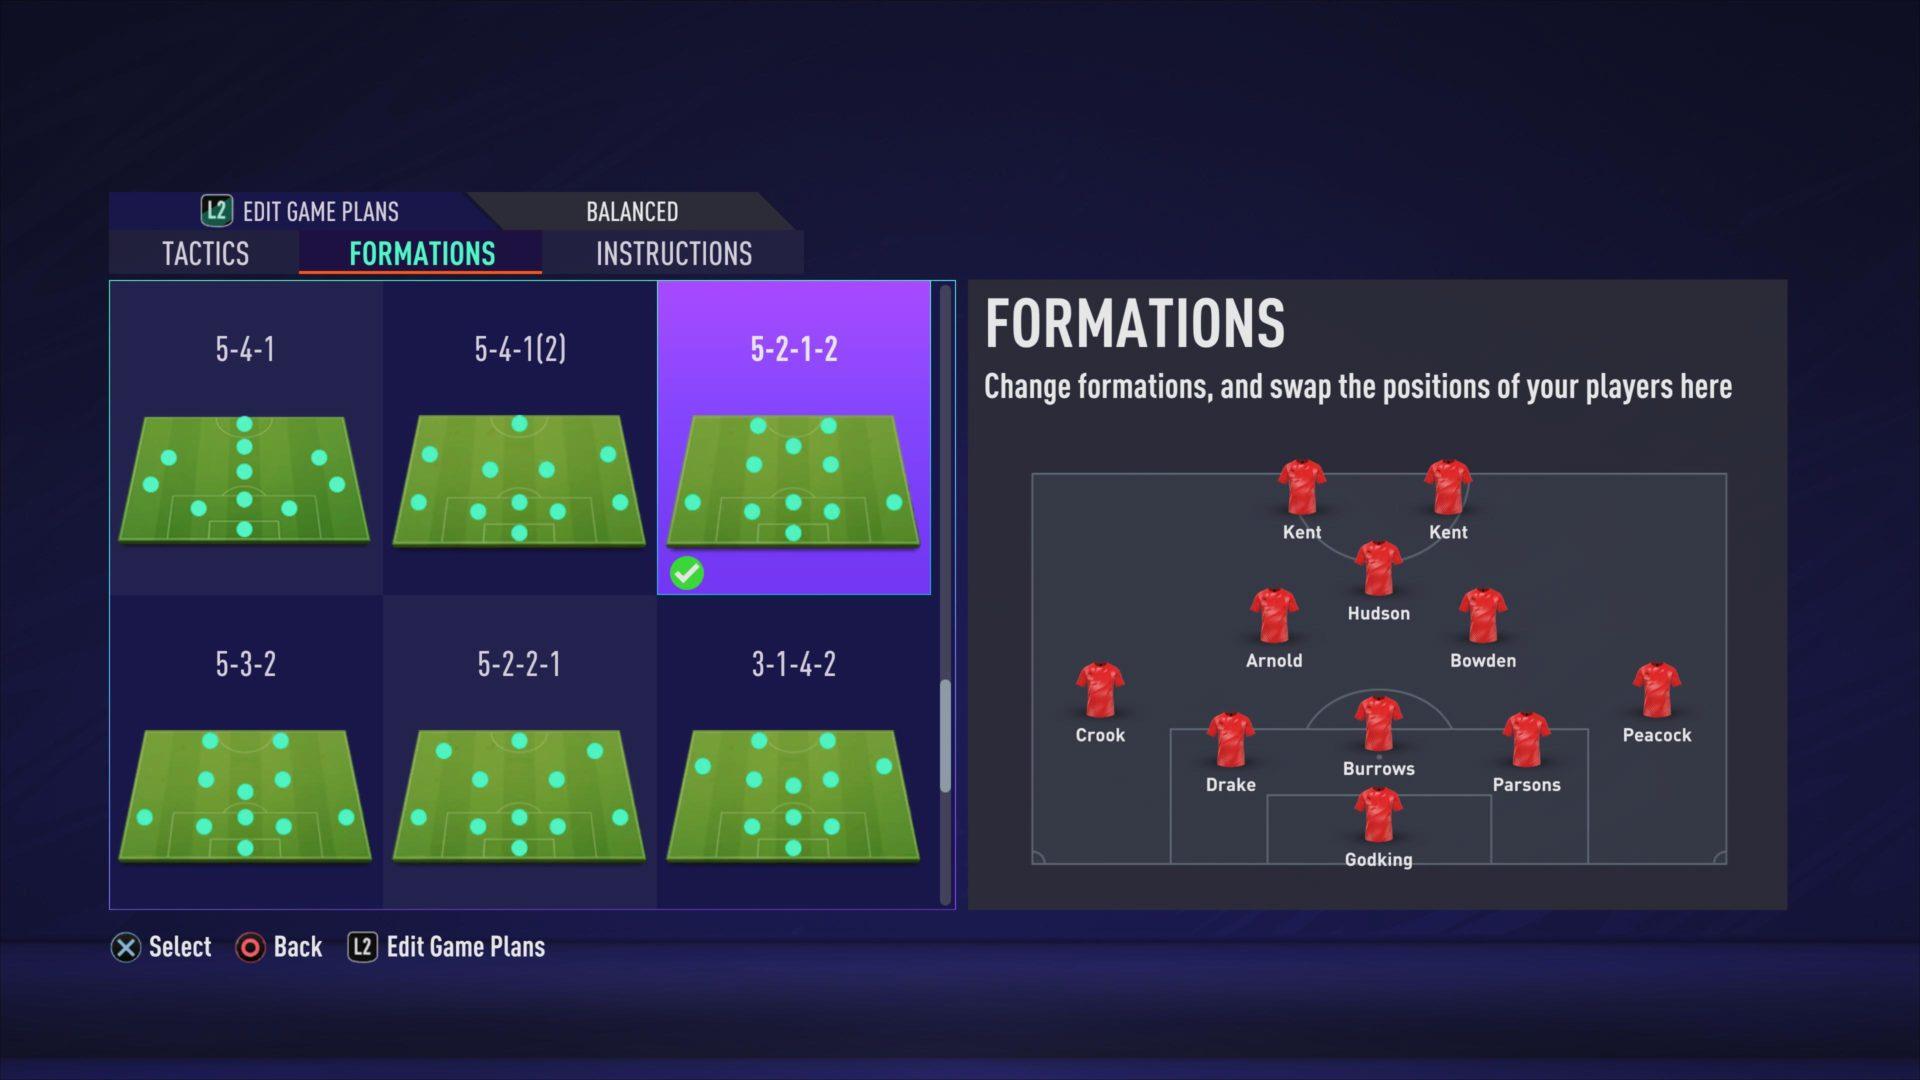 Análise detalhada dos Recursos do Pro Clubs do FIFA 22 - Site Oficial da EA  SPORTS